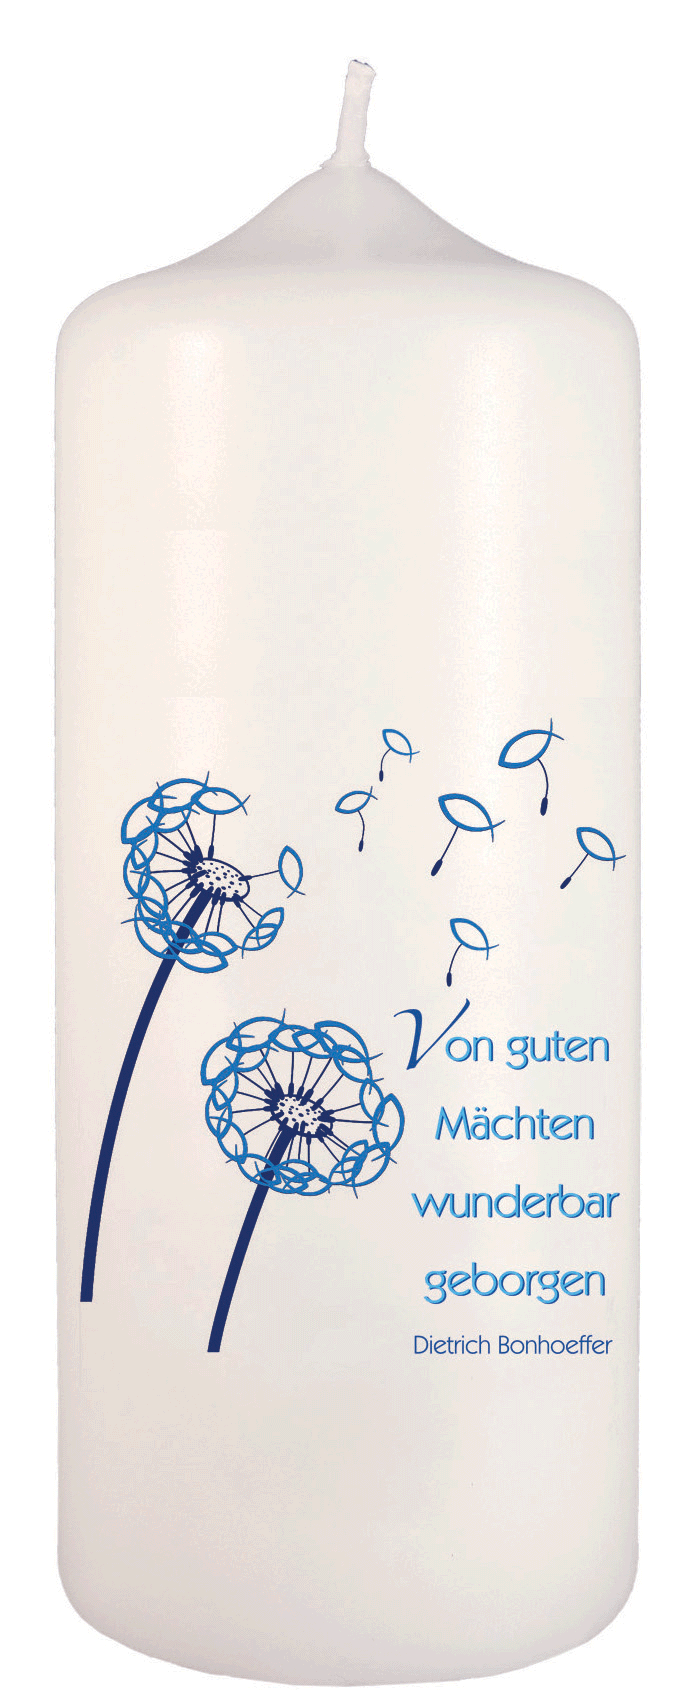 Kerze - Dietrich Bonhoeffer Von guten Mächten wunderbar geborgen - Cover